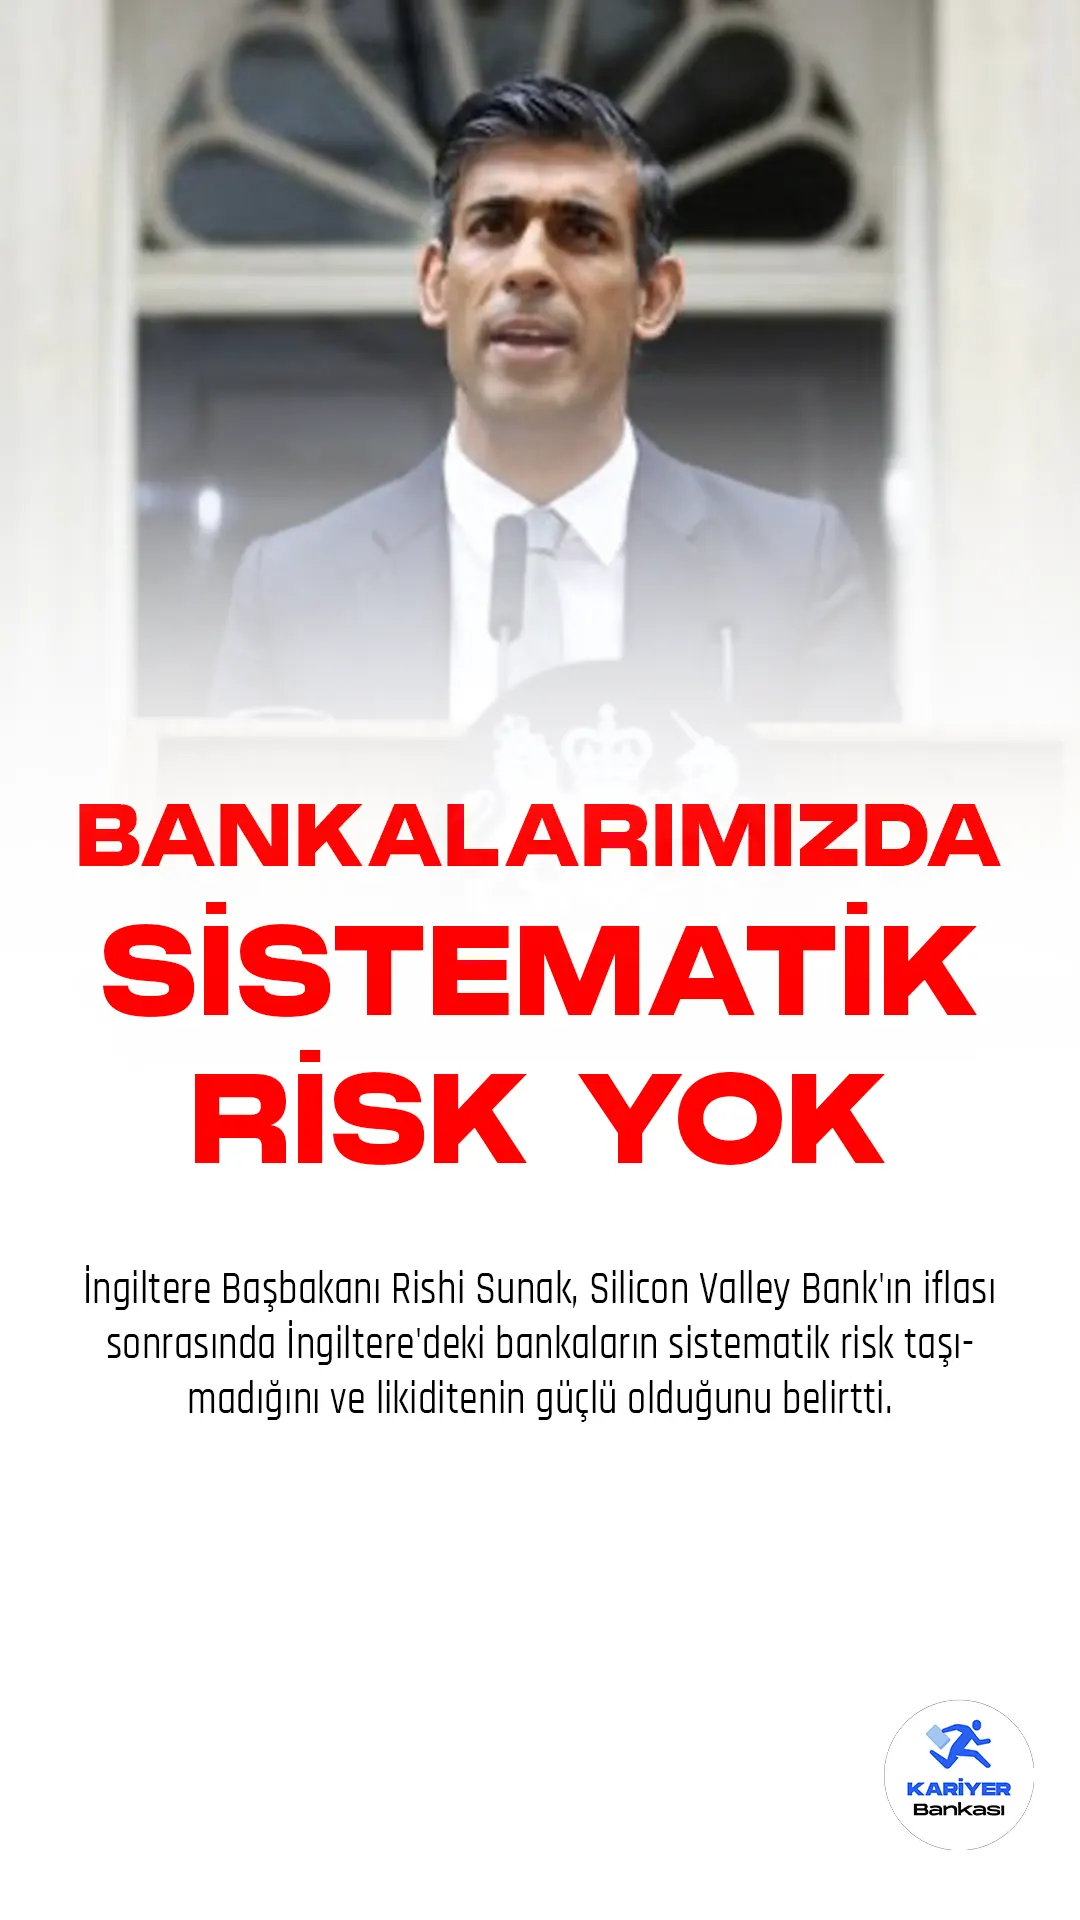 İngiltere Başbakanı Rishi Sunak, Silicon Valley Bank'ın iflası sonrasında İngiltere'deki bankaların sistematik risk taşımadığını ve likiditenin güçlü olduğunu belirtti.